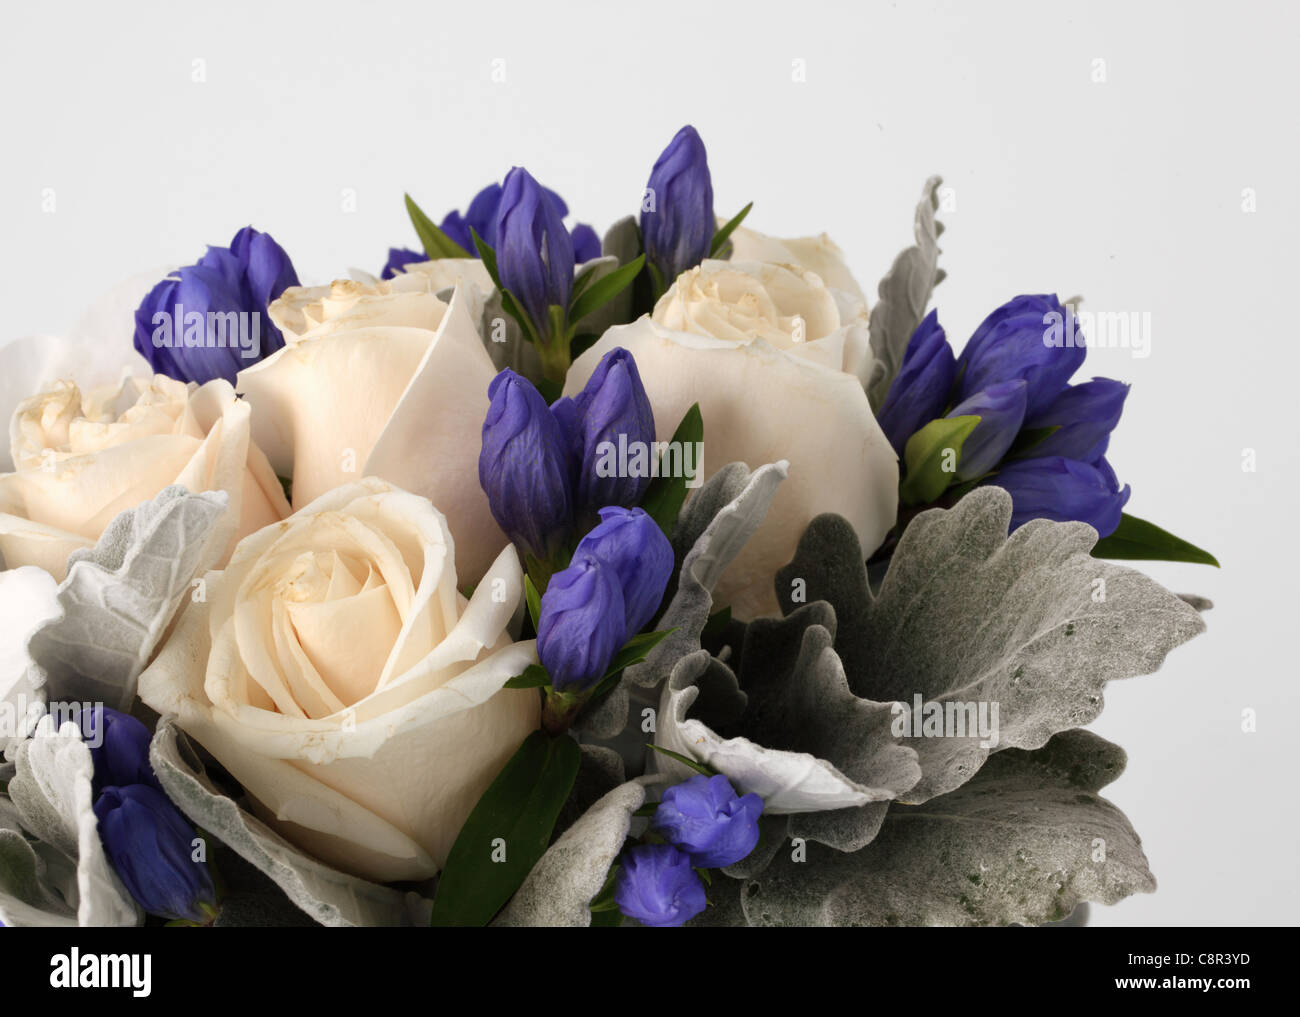 Eine Nahaufnahme von einem bunten Blumenstrauß. Sahne-Rosen, 1 Blaue Hortensie, weiße Phalaenopsis, unbekannte lila Knospen. Stockfoto